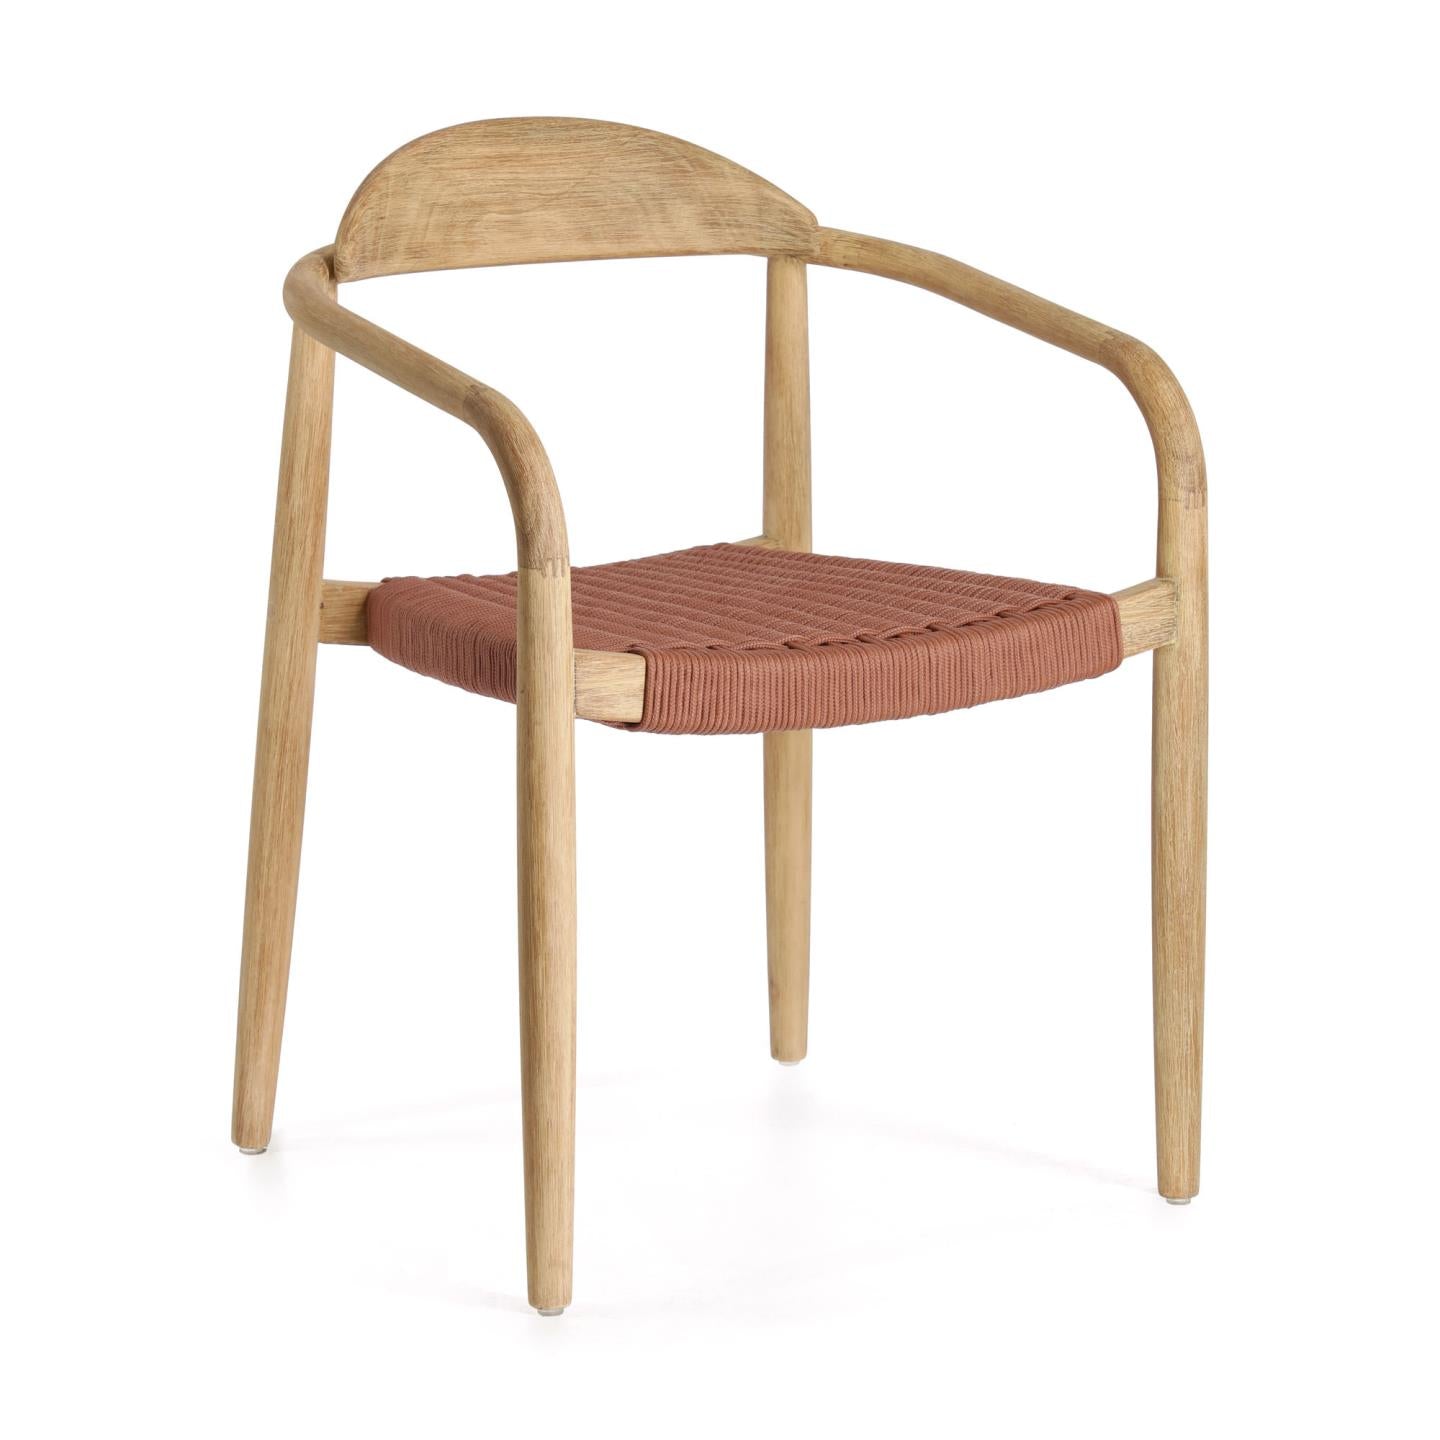 Nina egymásba rakható szék tömör akácfából, terrakotta kötélből készült ülőfelülettel